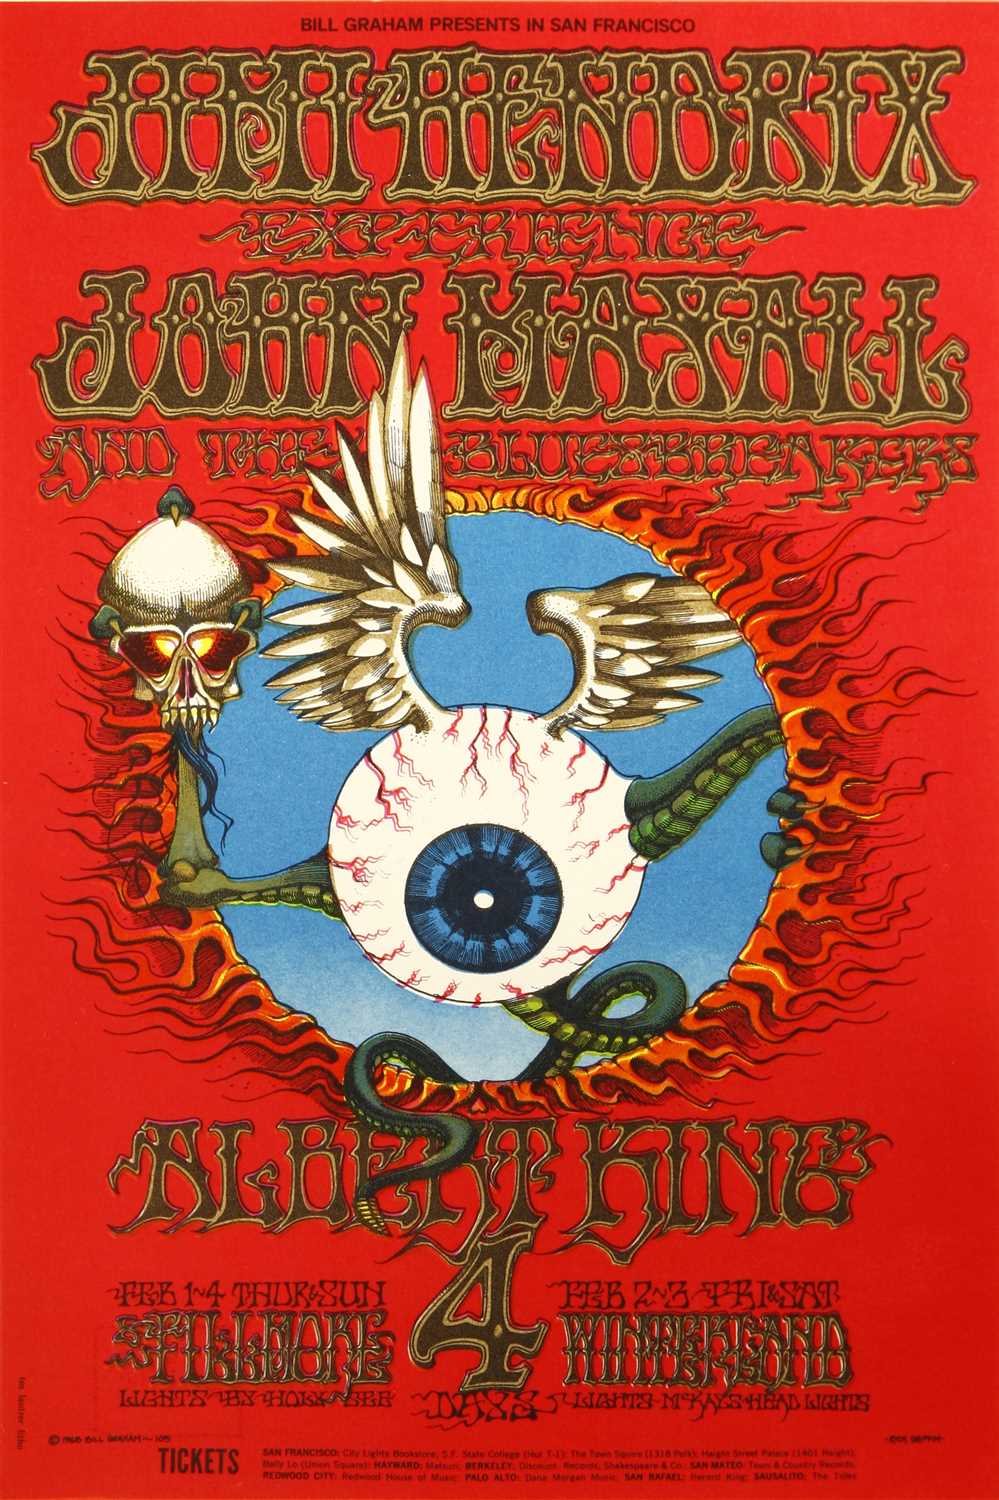 Lot 187 - Rare Jimi Hendrix flying eyeball handbill/postcard